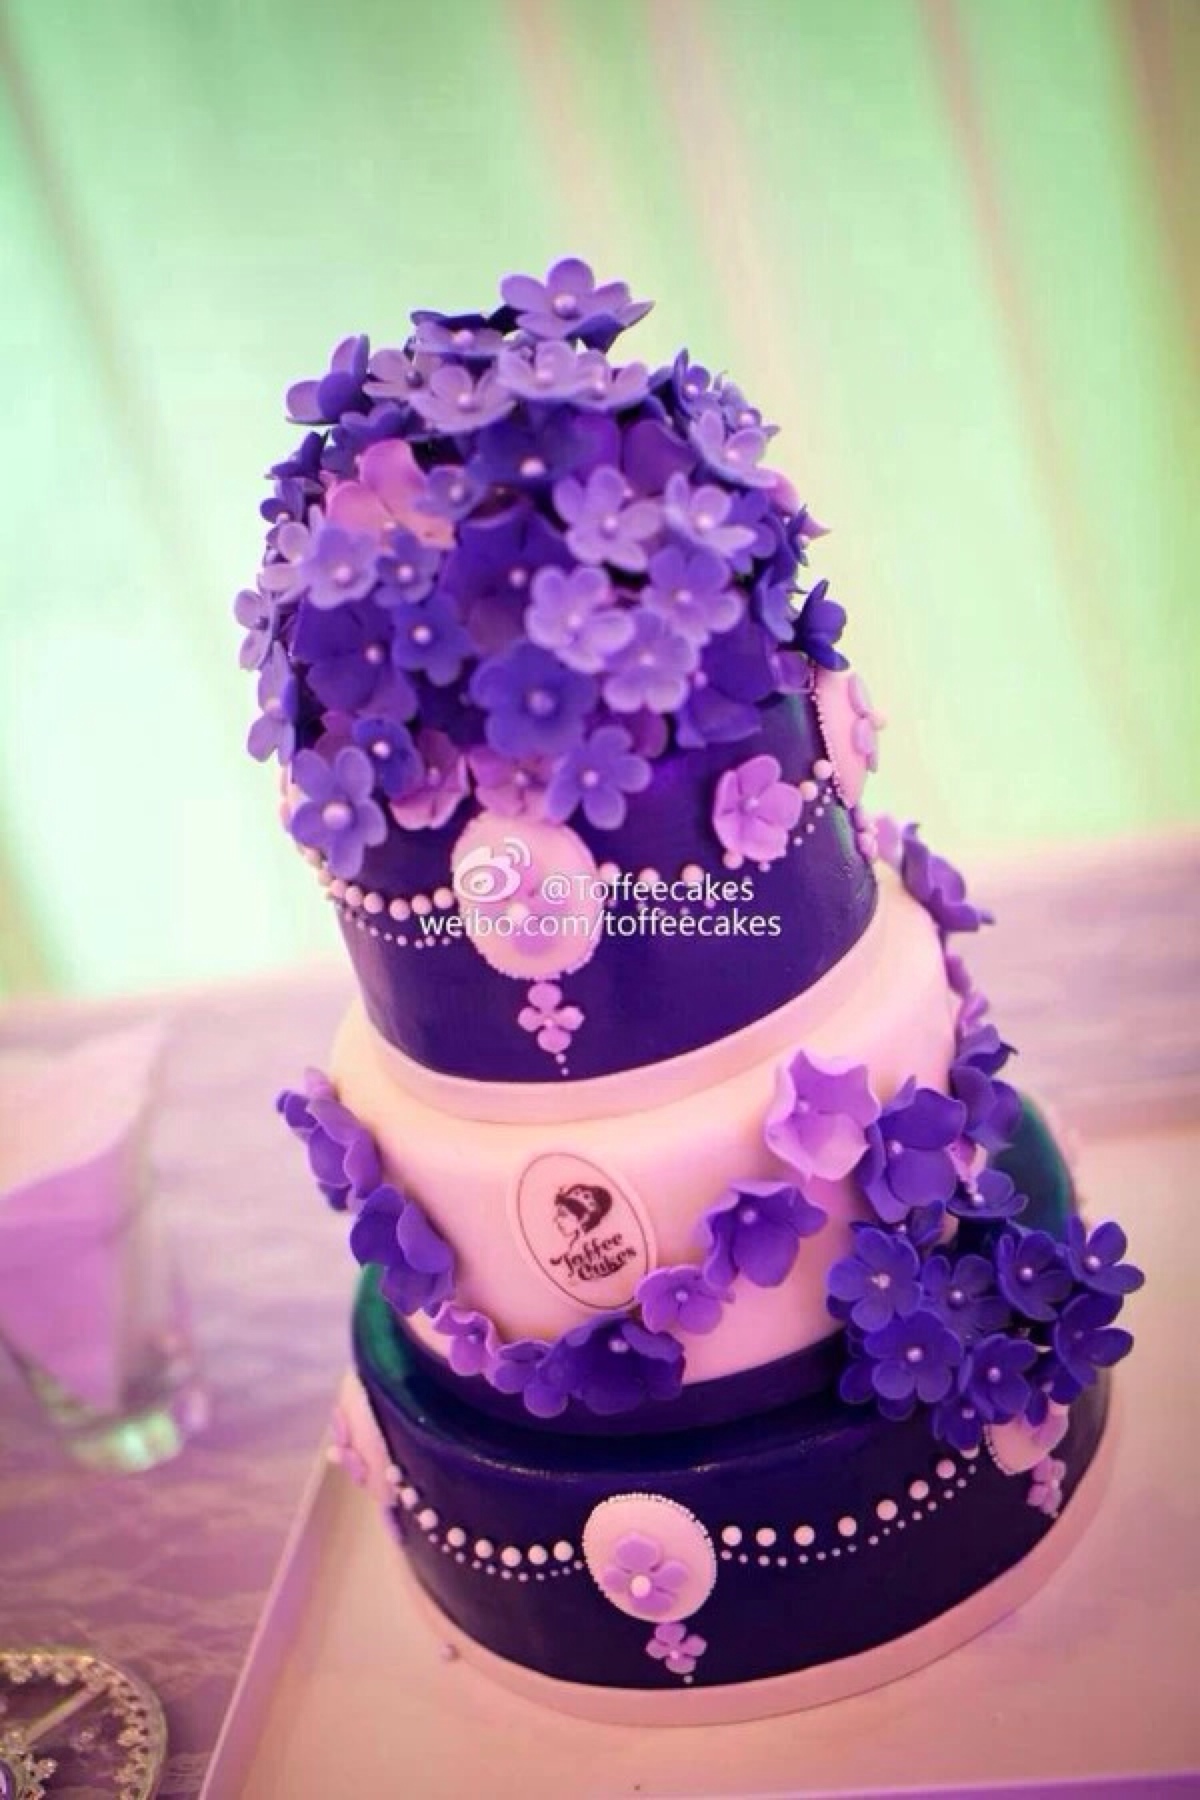 翻糖 婚礼 鲜花 紫色 蛋糕 甜点